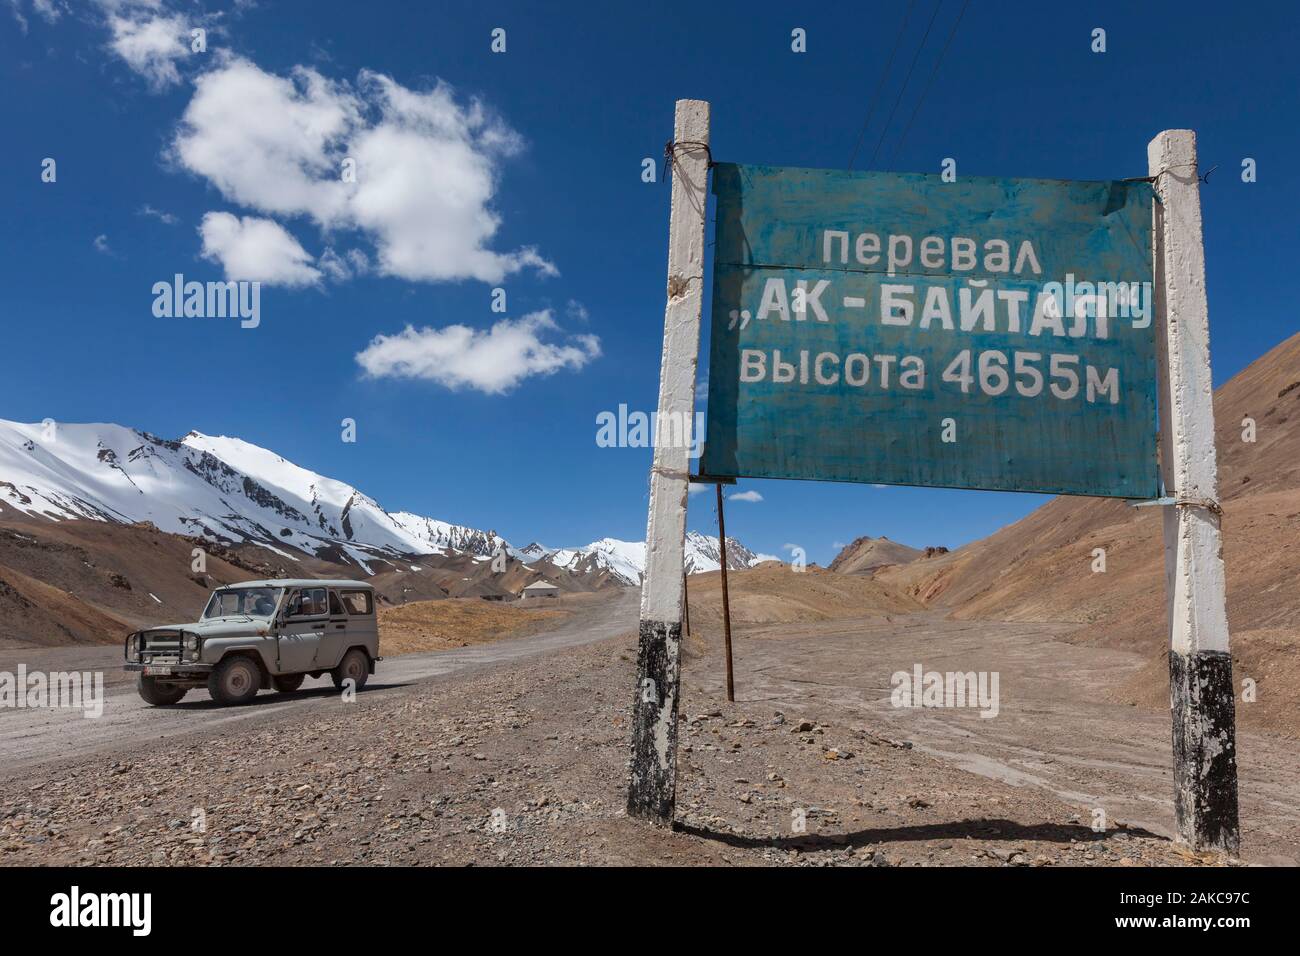 Tagikistan, Gorno-Badakhshan Regione autonoma, Ak-Baital Pass, altitudine 4655m, il Pamir Highway, Tajik National Park e Pamir Mountains, Sito Patrimonio Mondiale dell'UNESCO, via, jeep e cirillico segno annunciando l'altitudine del pass Foto Stock